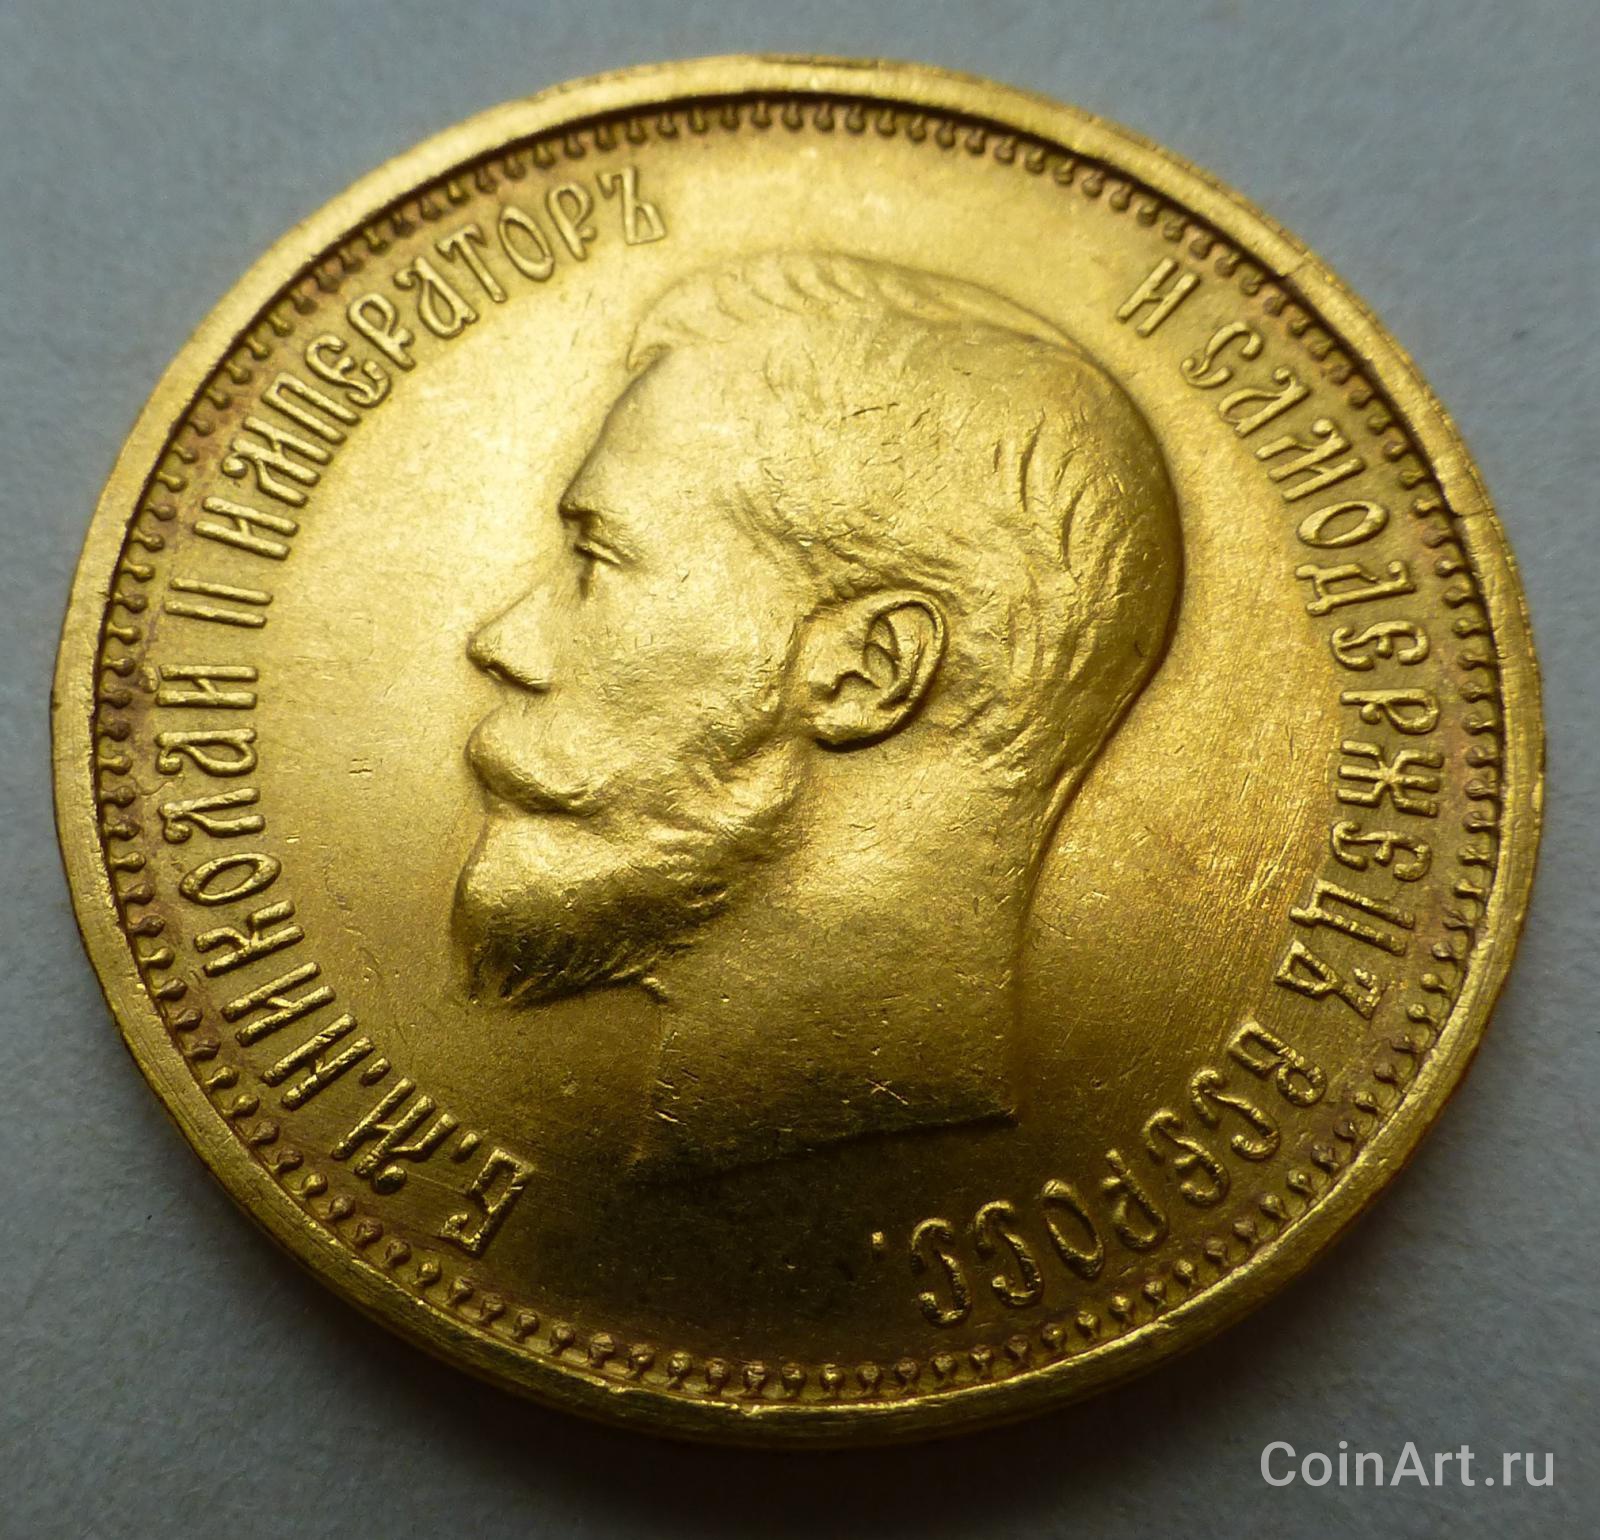 Золотой рубль Витте. Купить 10 рублей 1899 года золото цена на сегодня. 10 рублей золотом 1899 года